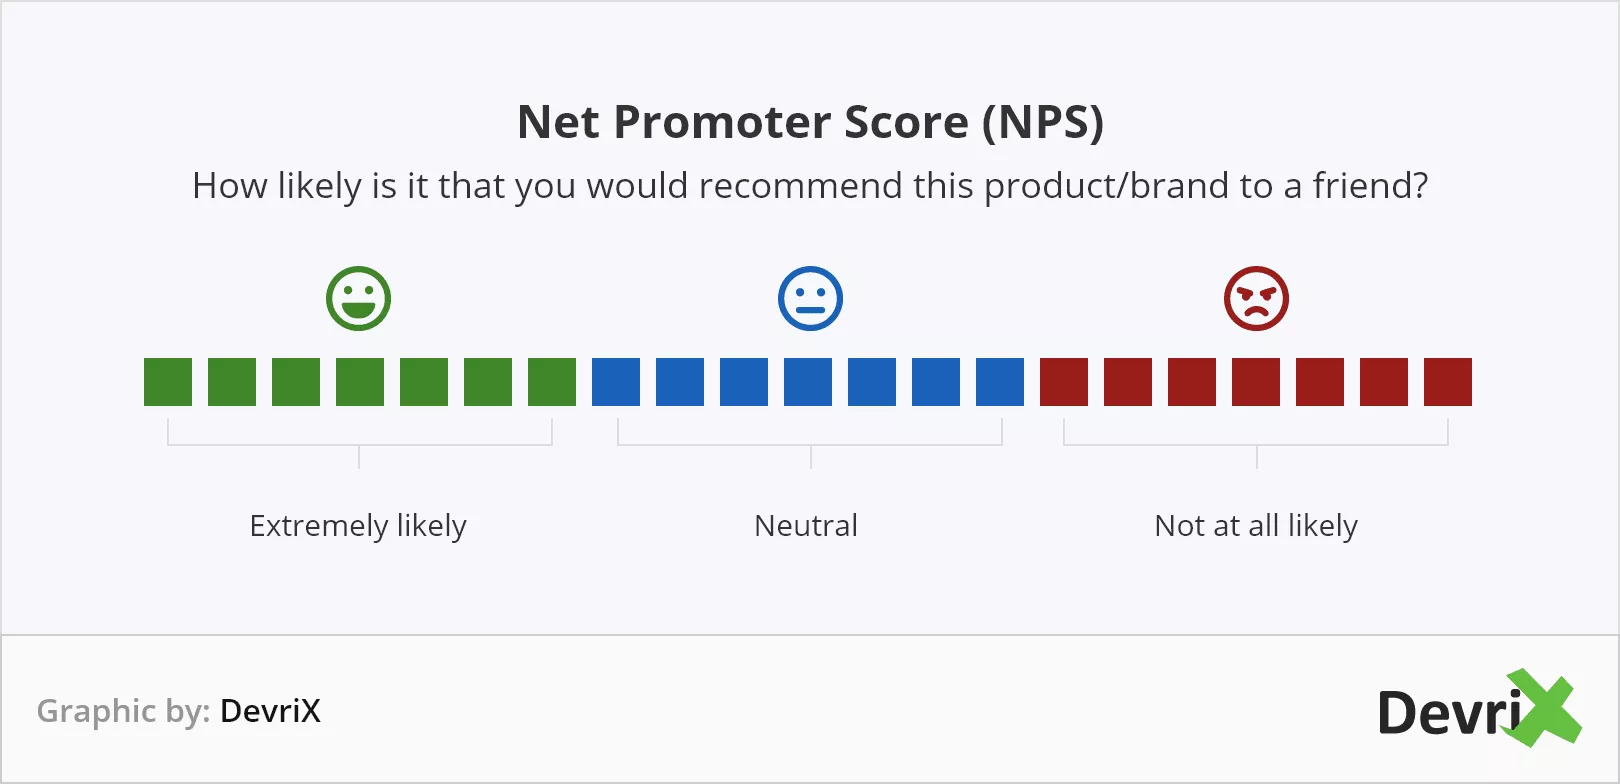 NPS (Net Promoter Score)